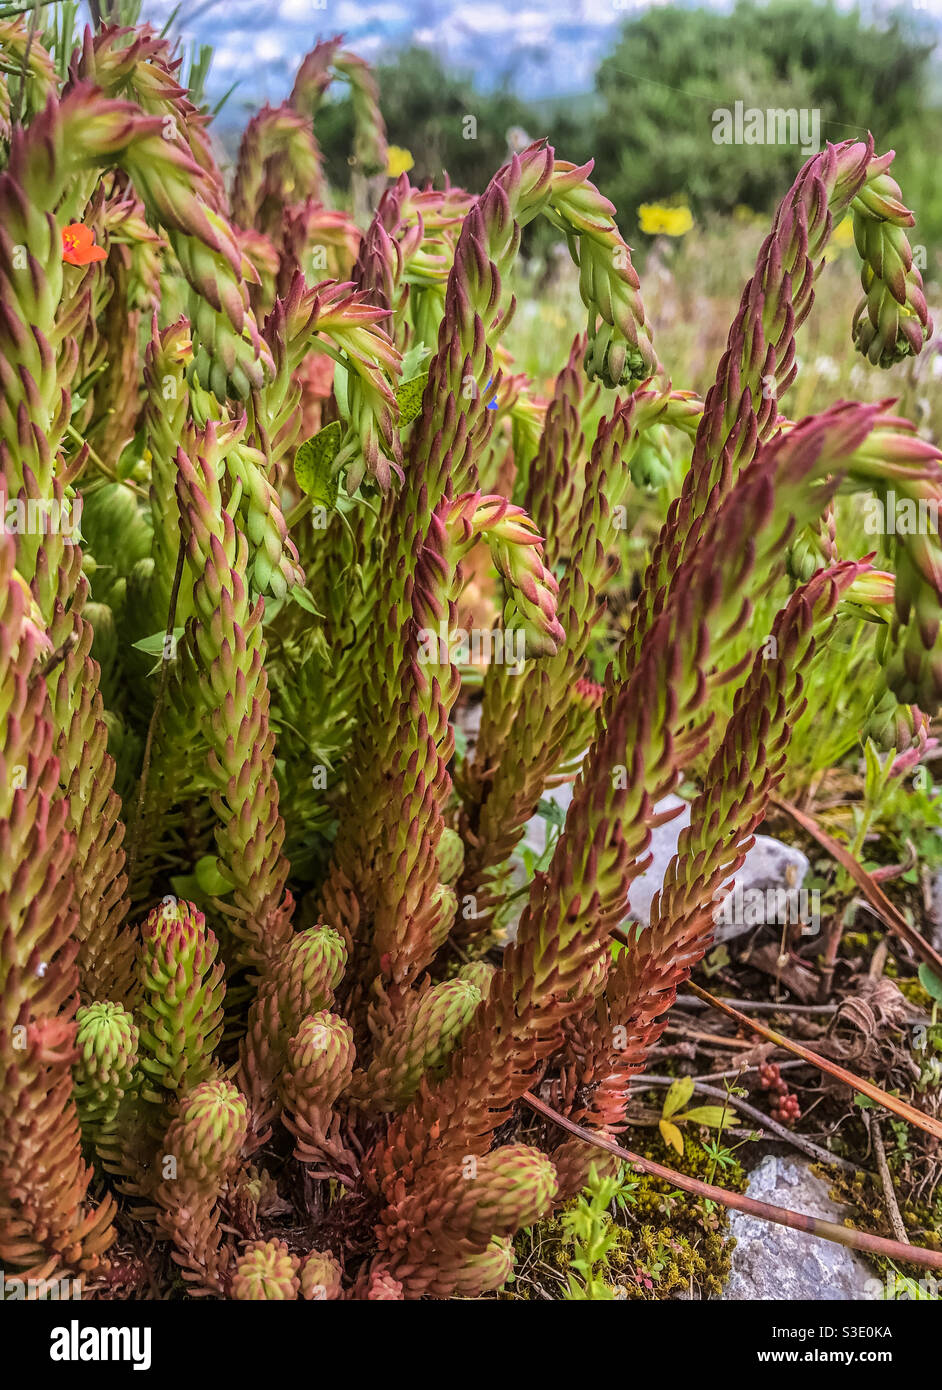 Sedum Forsterianum (curled stalks before flowering) Stock Photo